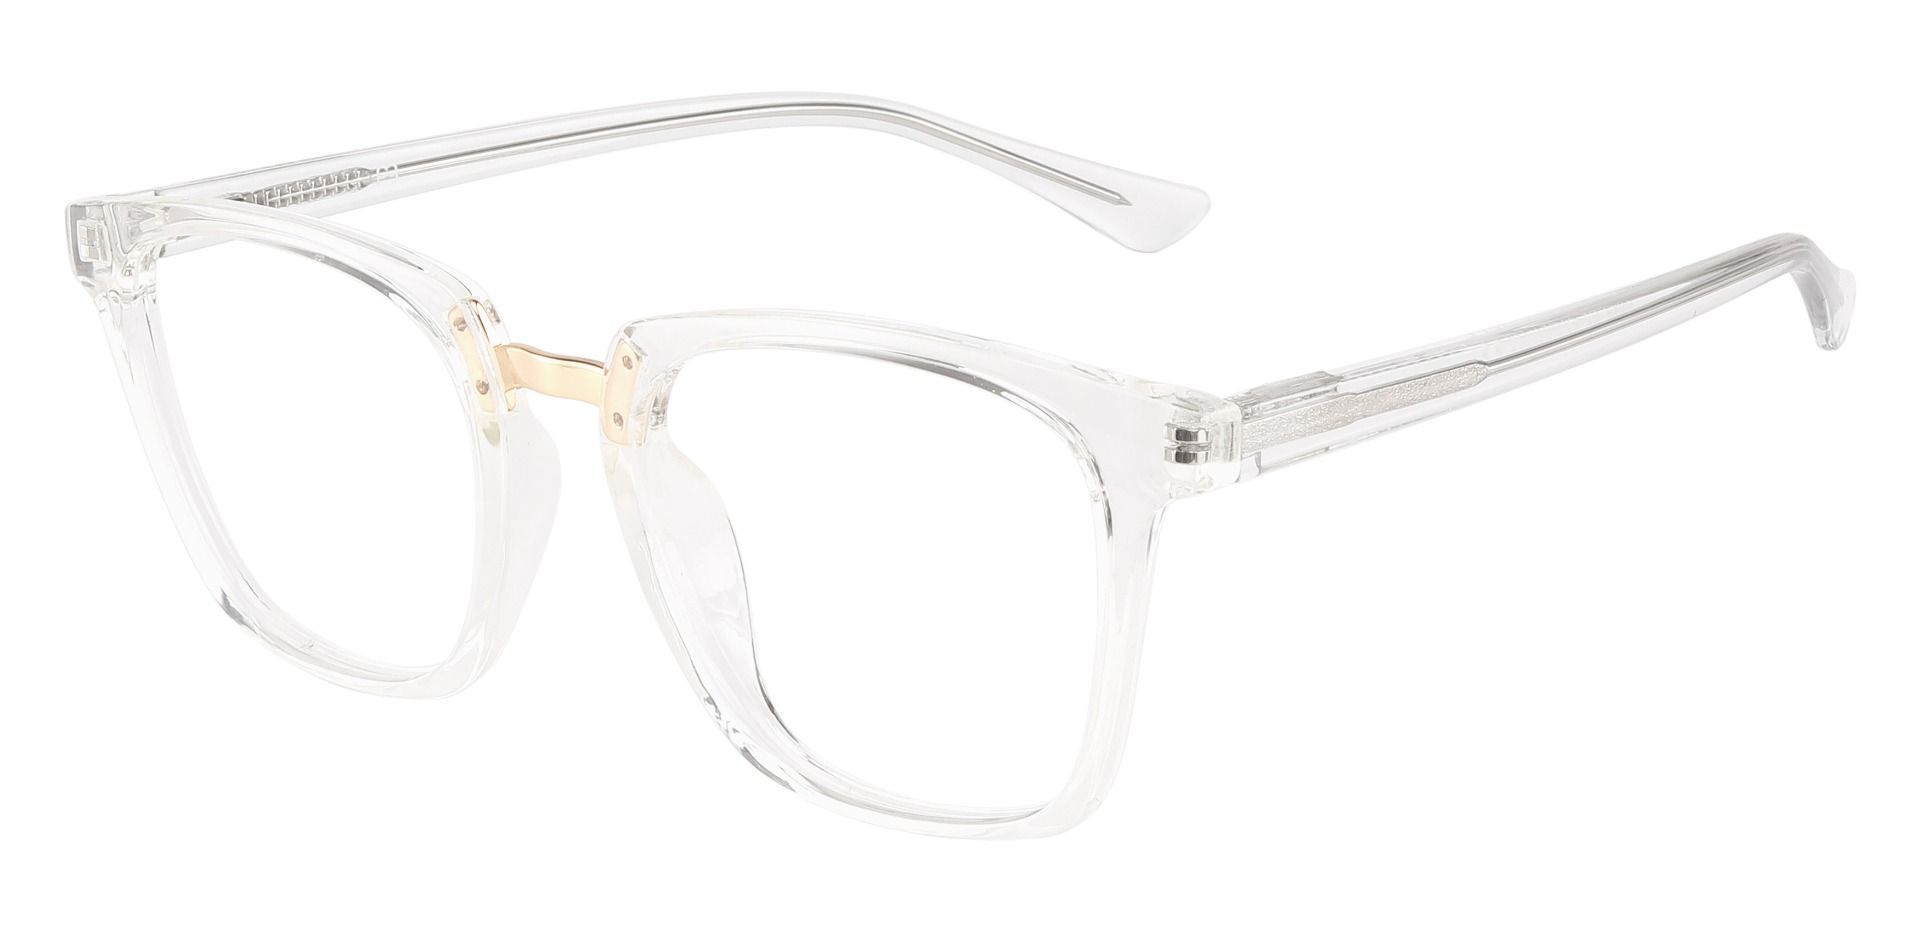 Delta Square Progressive Glasses - Clear